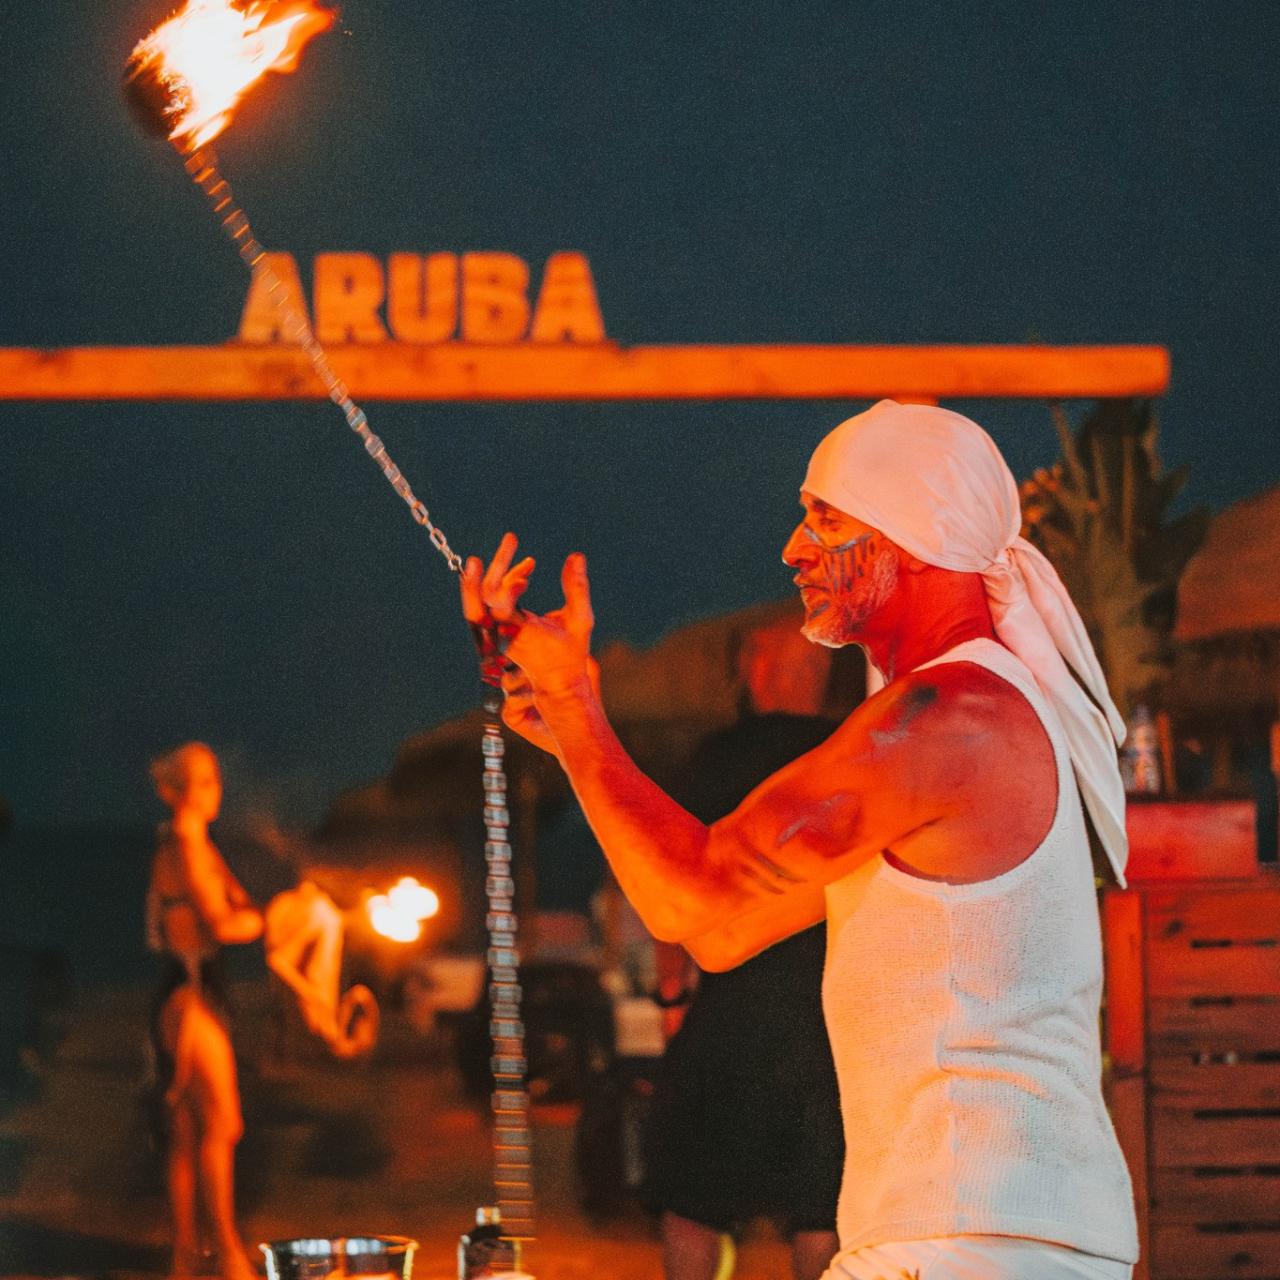 Espectáculo de fuego en Playa Aruba.